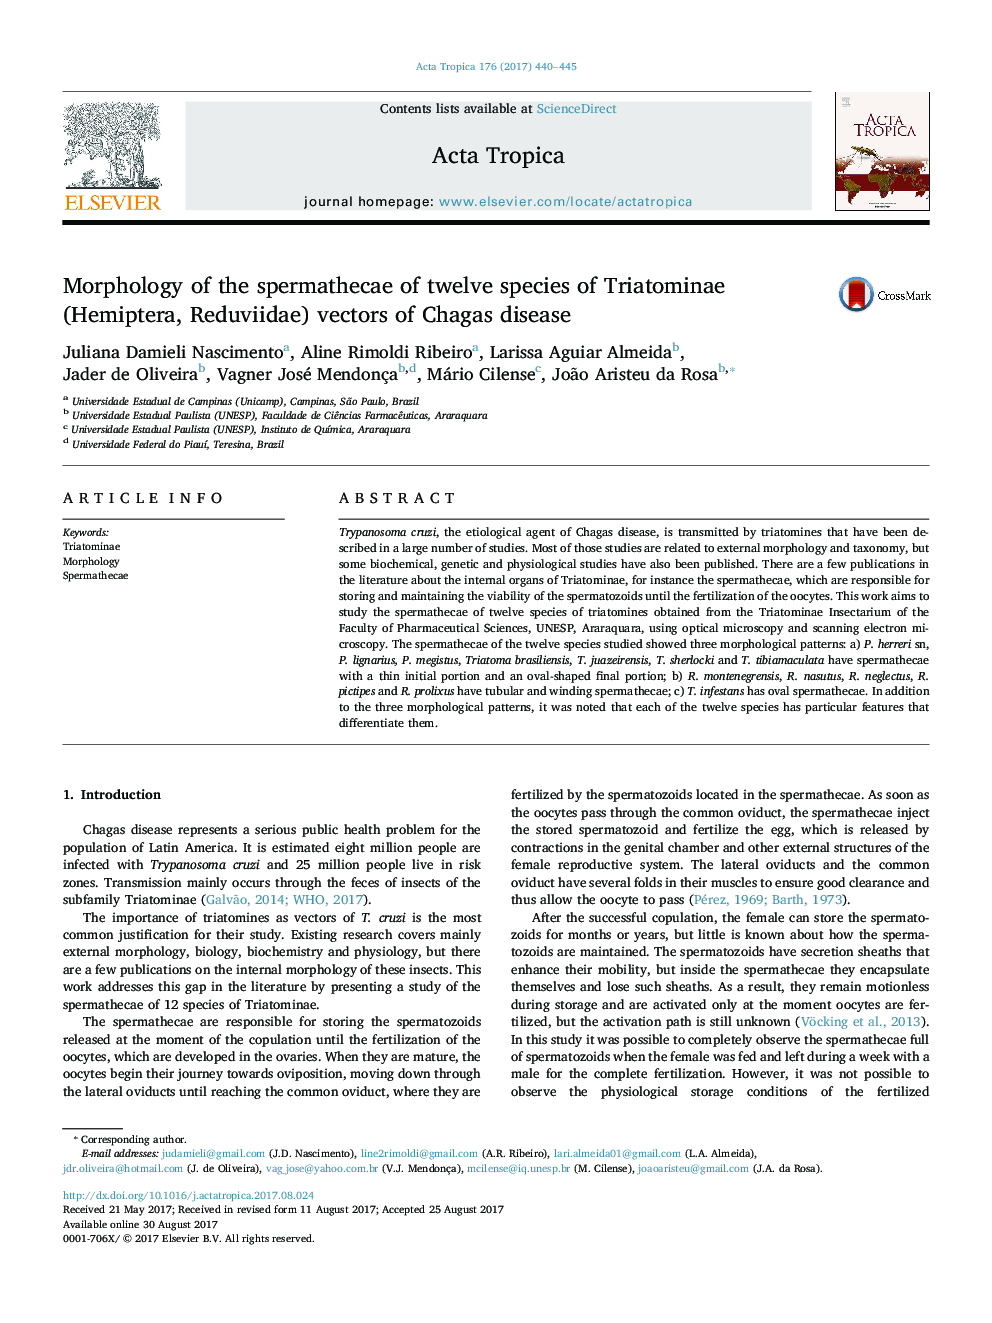 Morphology of the spermathecae of twelve species of Triatominae (Hemiptera, Reduviidae) vectors of Chagas disease